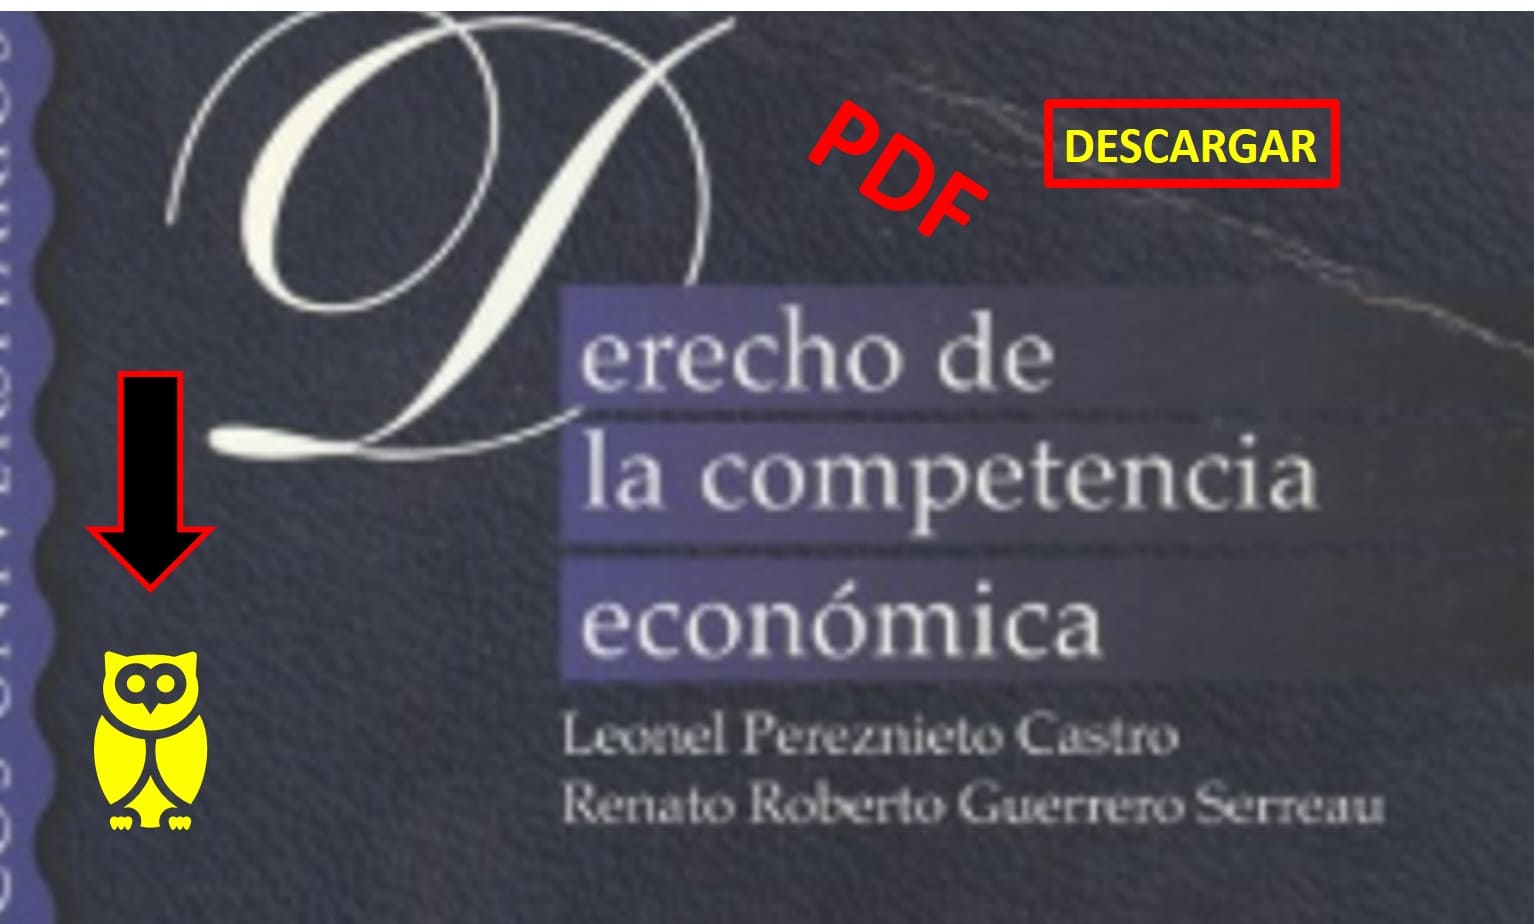 derecho de la competencia economica libro pdf